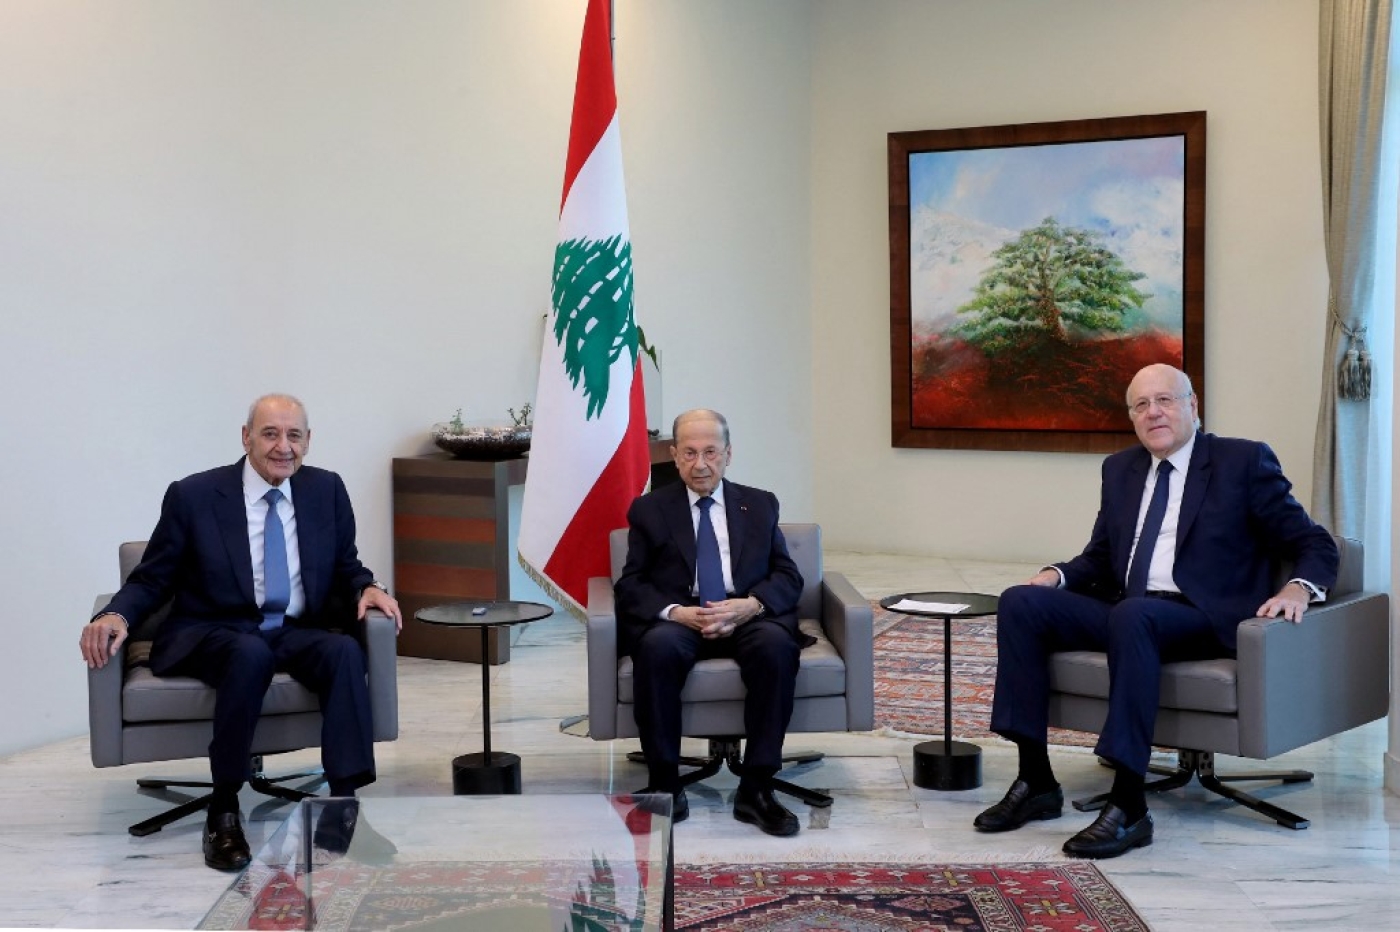 Le président du Parlement, Nabih Berri, le président de la République, Michel Aoun, et le Premier ministre Najib Mikati au palais présidentiel, à Beyrouth, le 13 septembre 2021 (AFP)